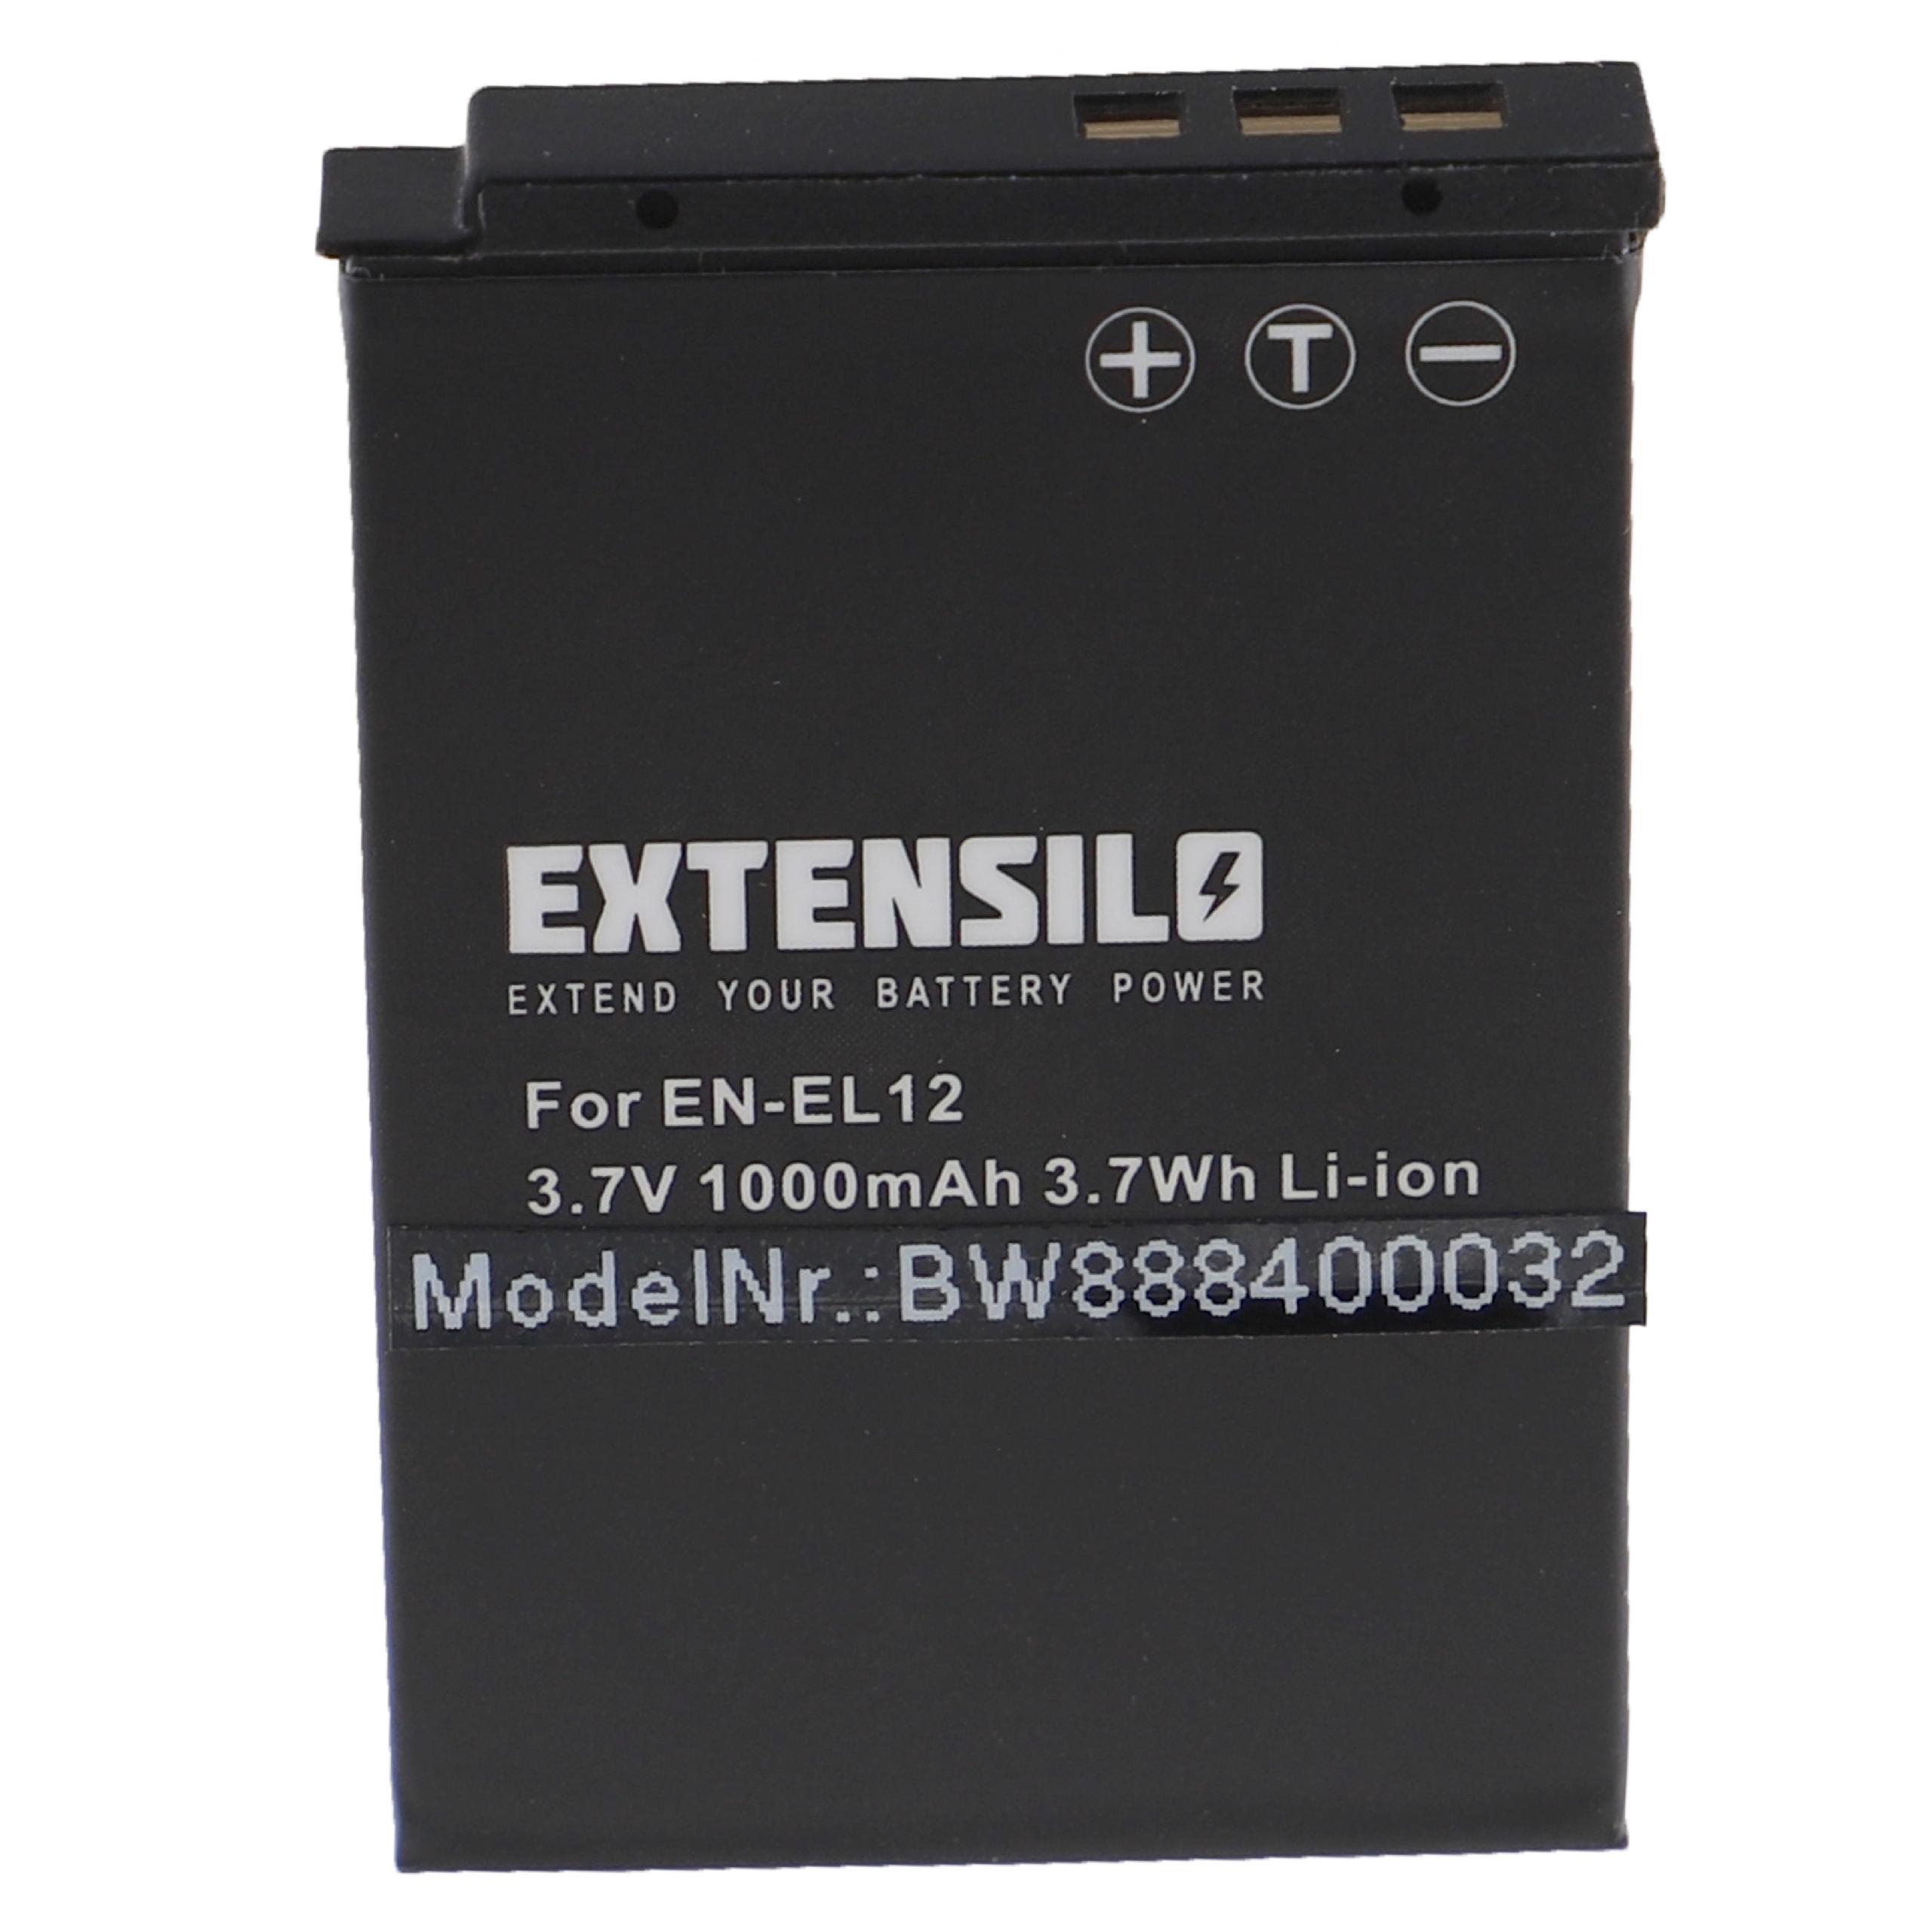 Battery Replacement for Nikon EN-EL12 - 1000mAh, 3.7V, Li-Ion